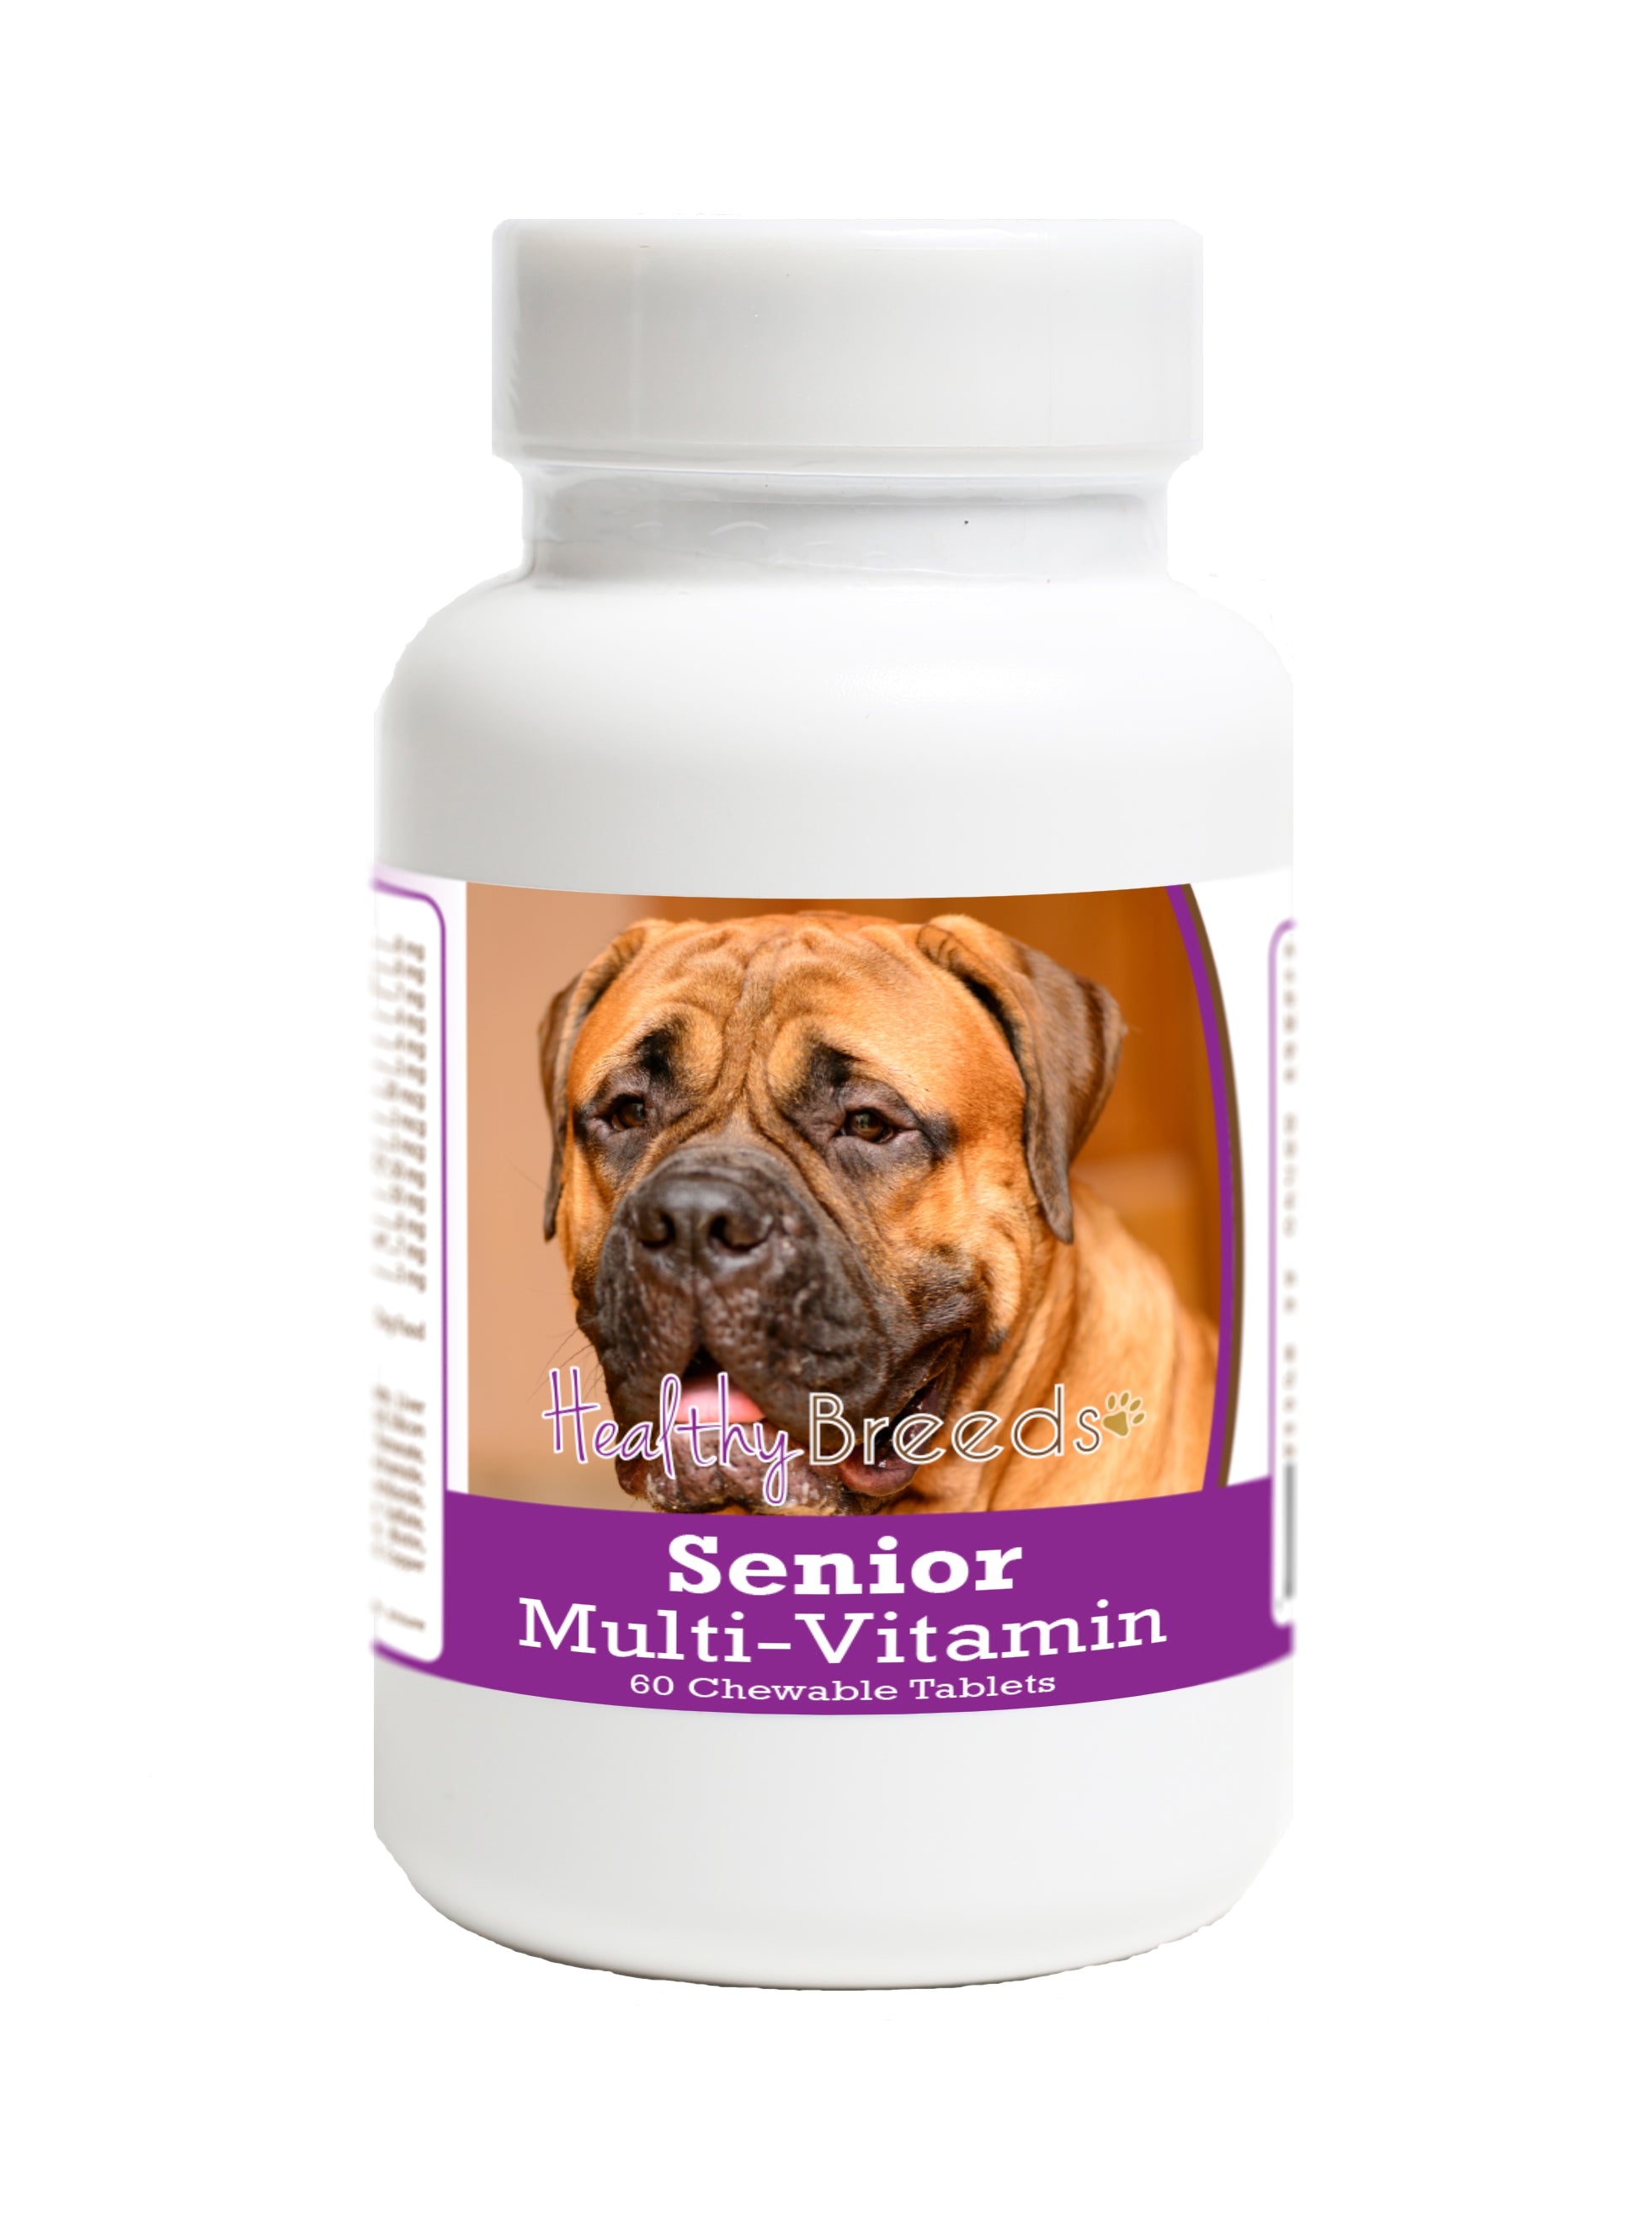 Bullmastiff Senior Dog Multivitamin Tablets 60 Count